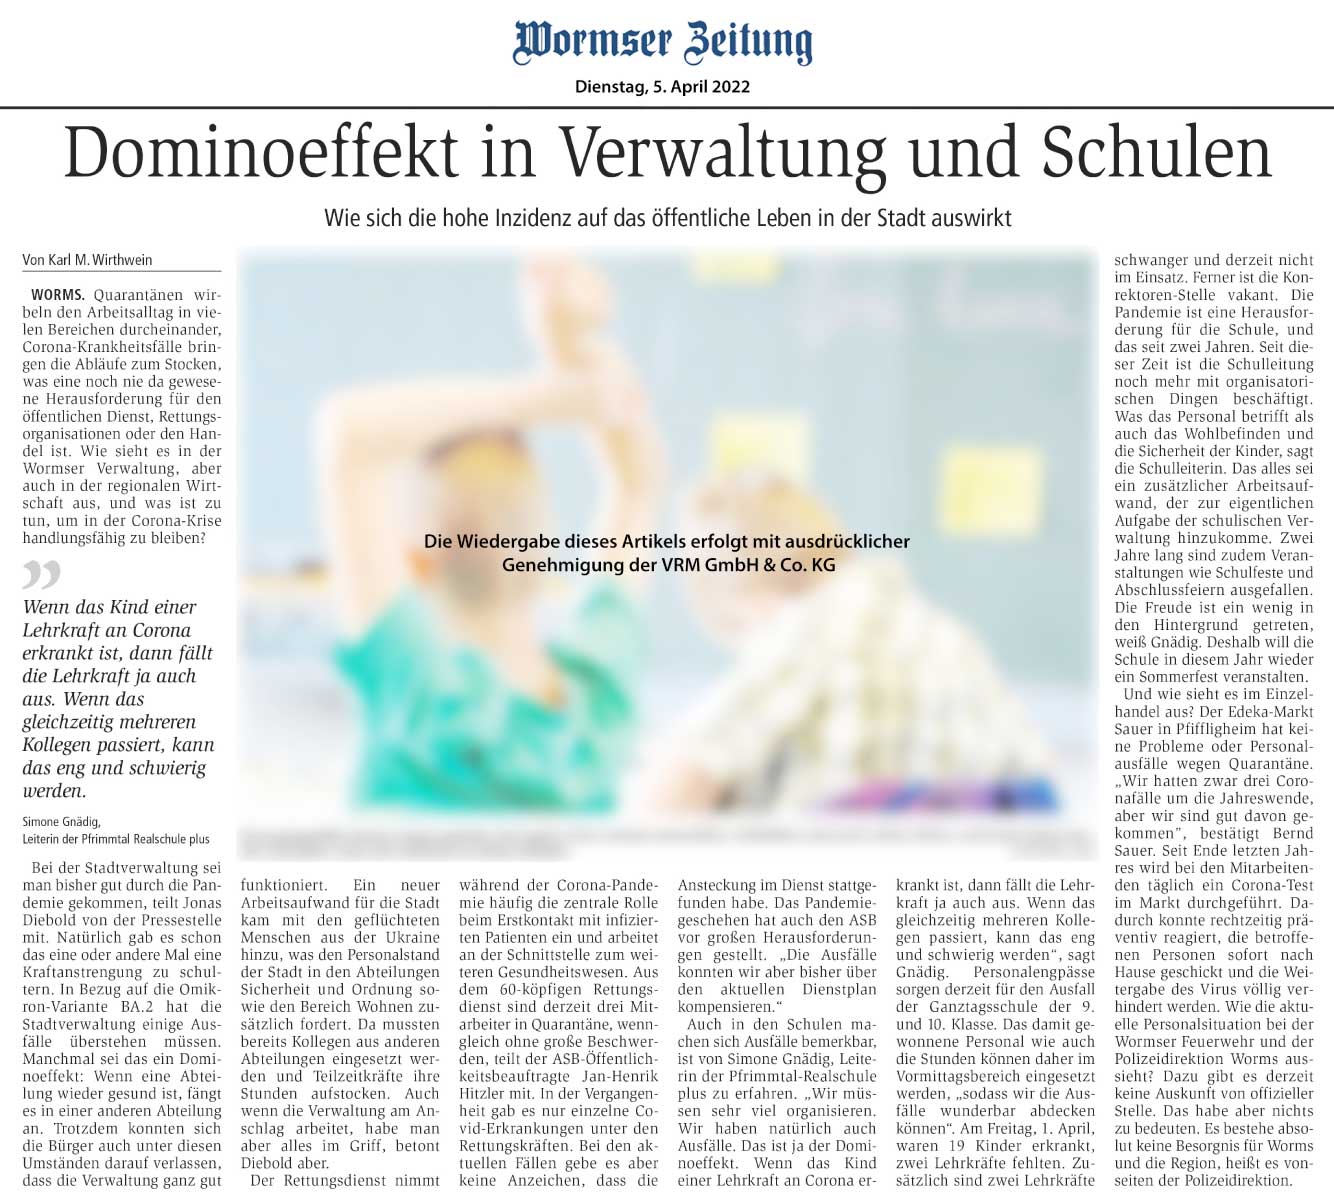 Wormser Zeitung: Dominoeffekt in Verwaltung und Schulen